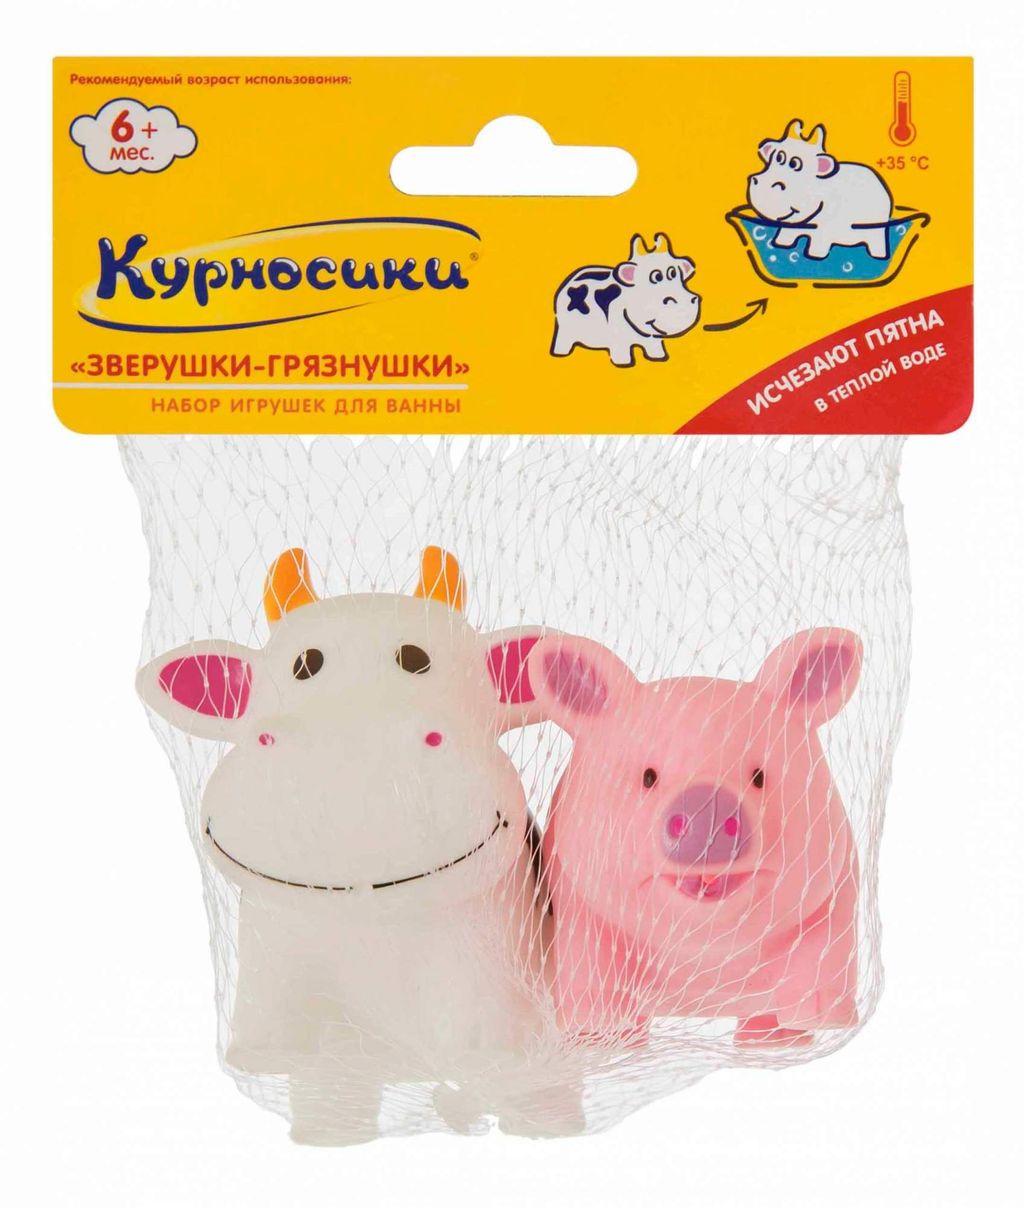 фото упаковки Курносики набор игрушек для ванны Зверушки-грязнушки 6 мес+